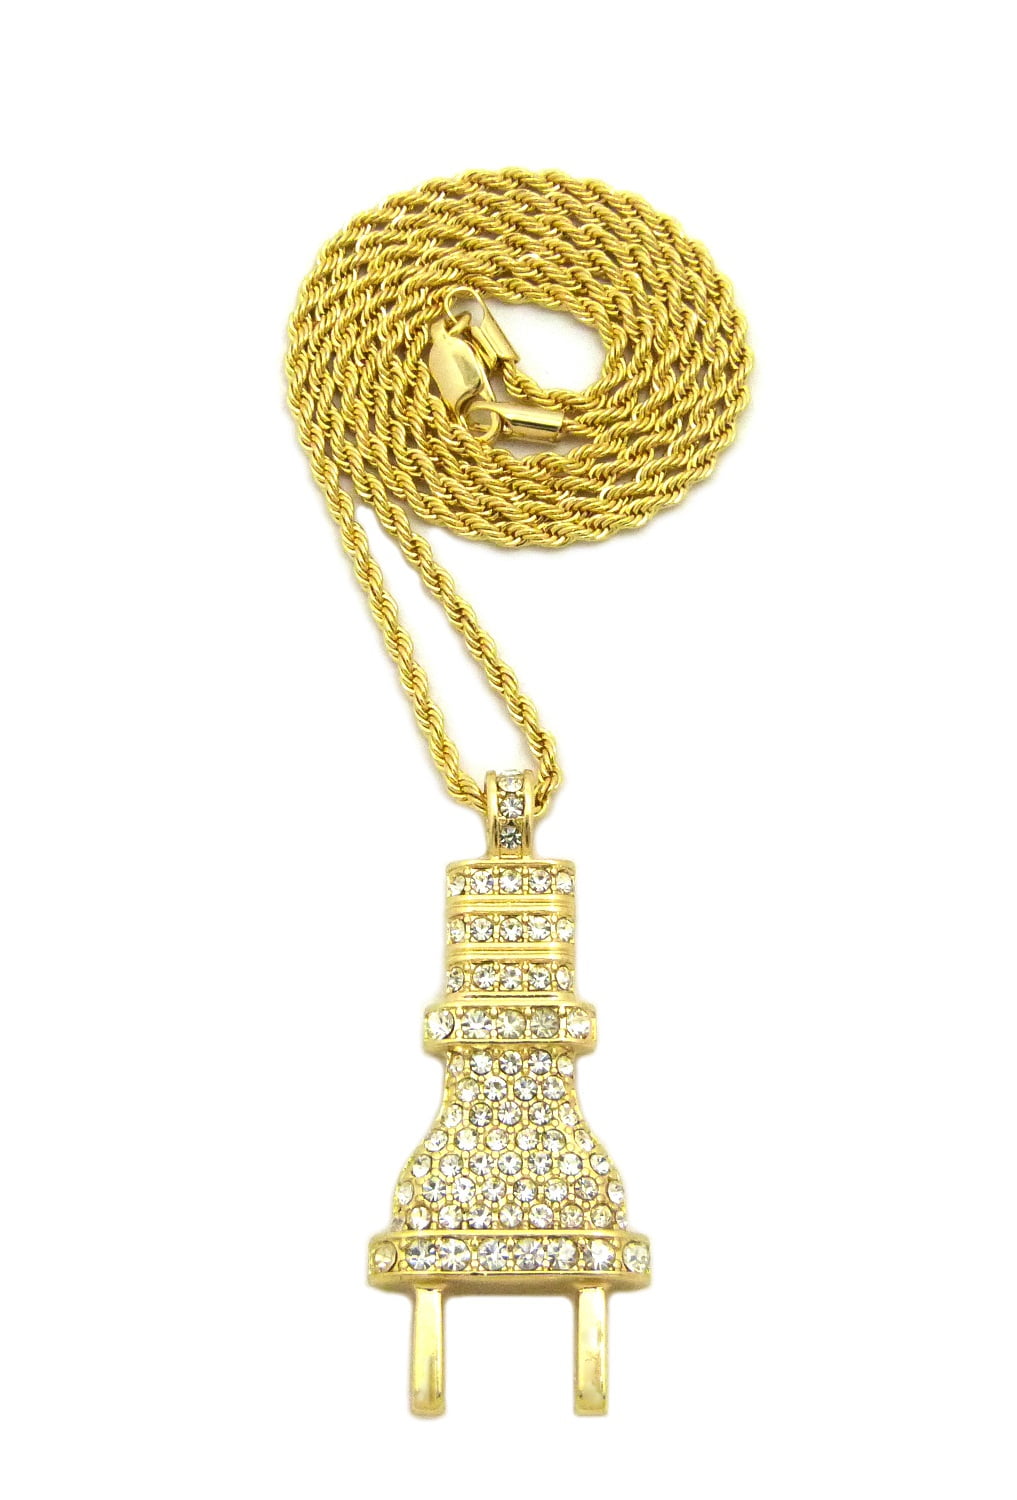 JEWELHEART 14K Gold Cuban Link Chain Men - 2.3mm Diamond Cut Open